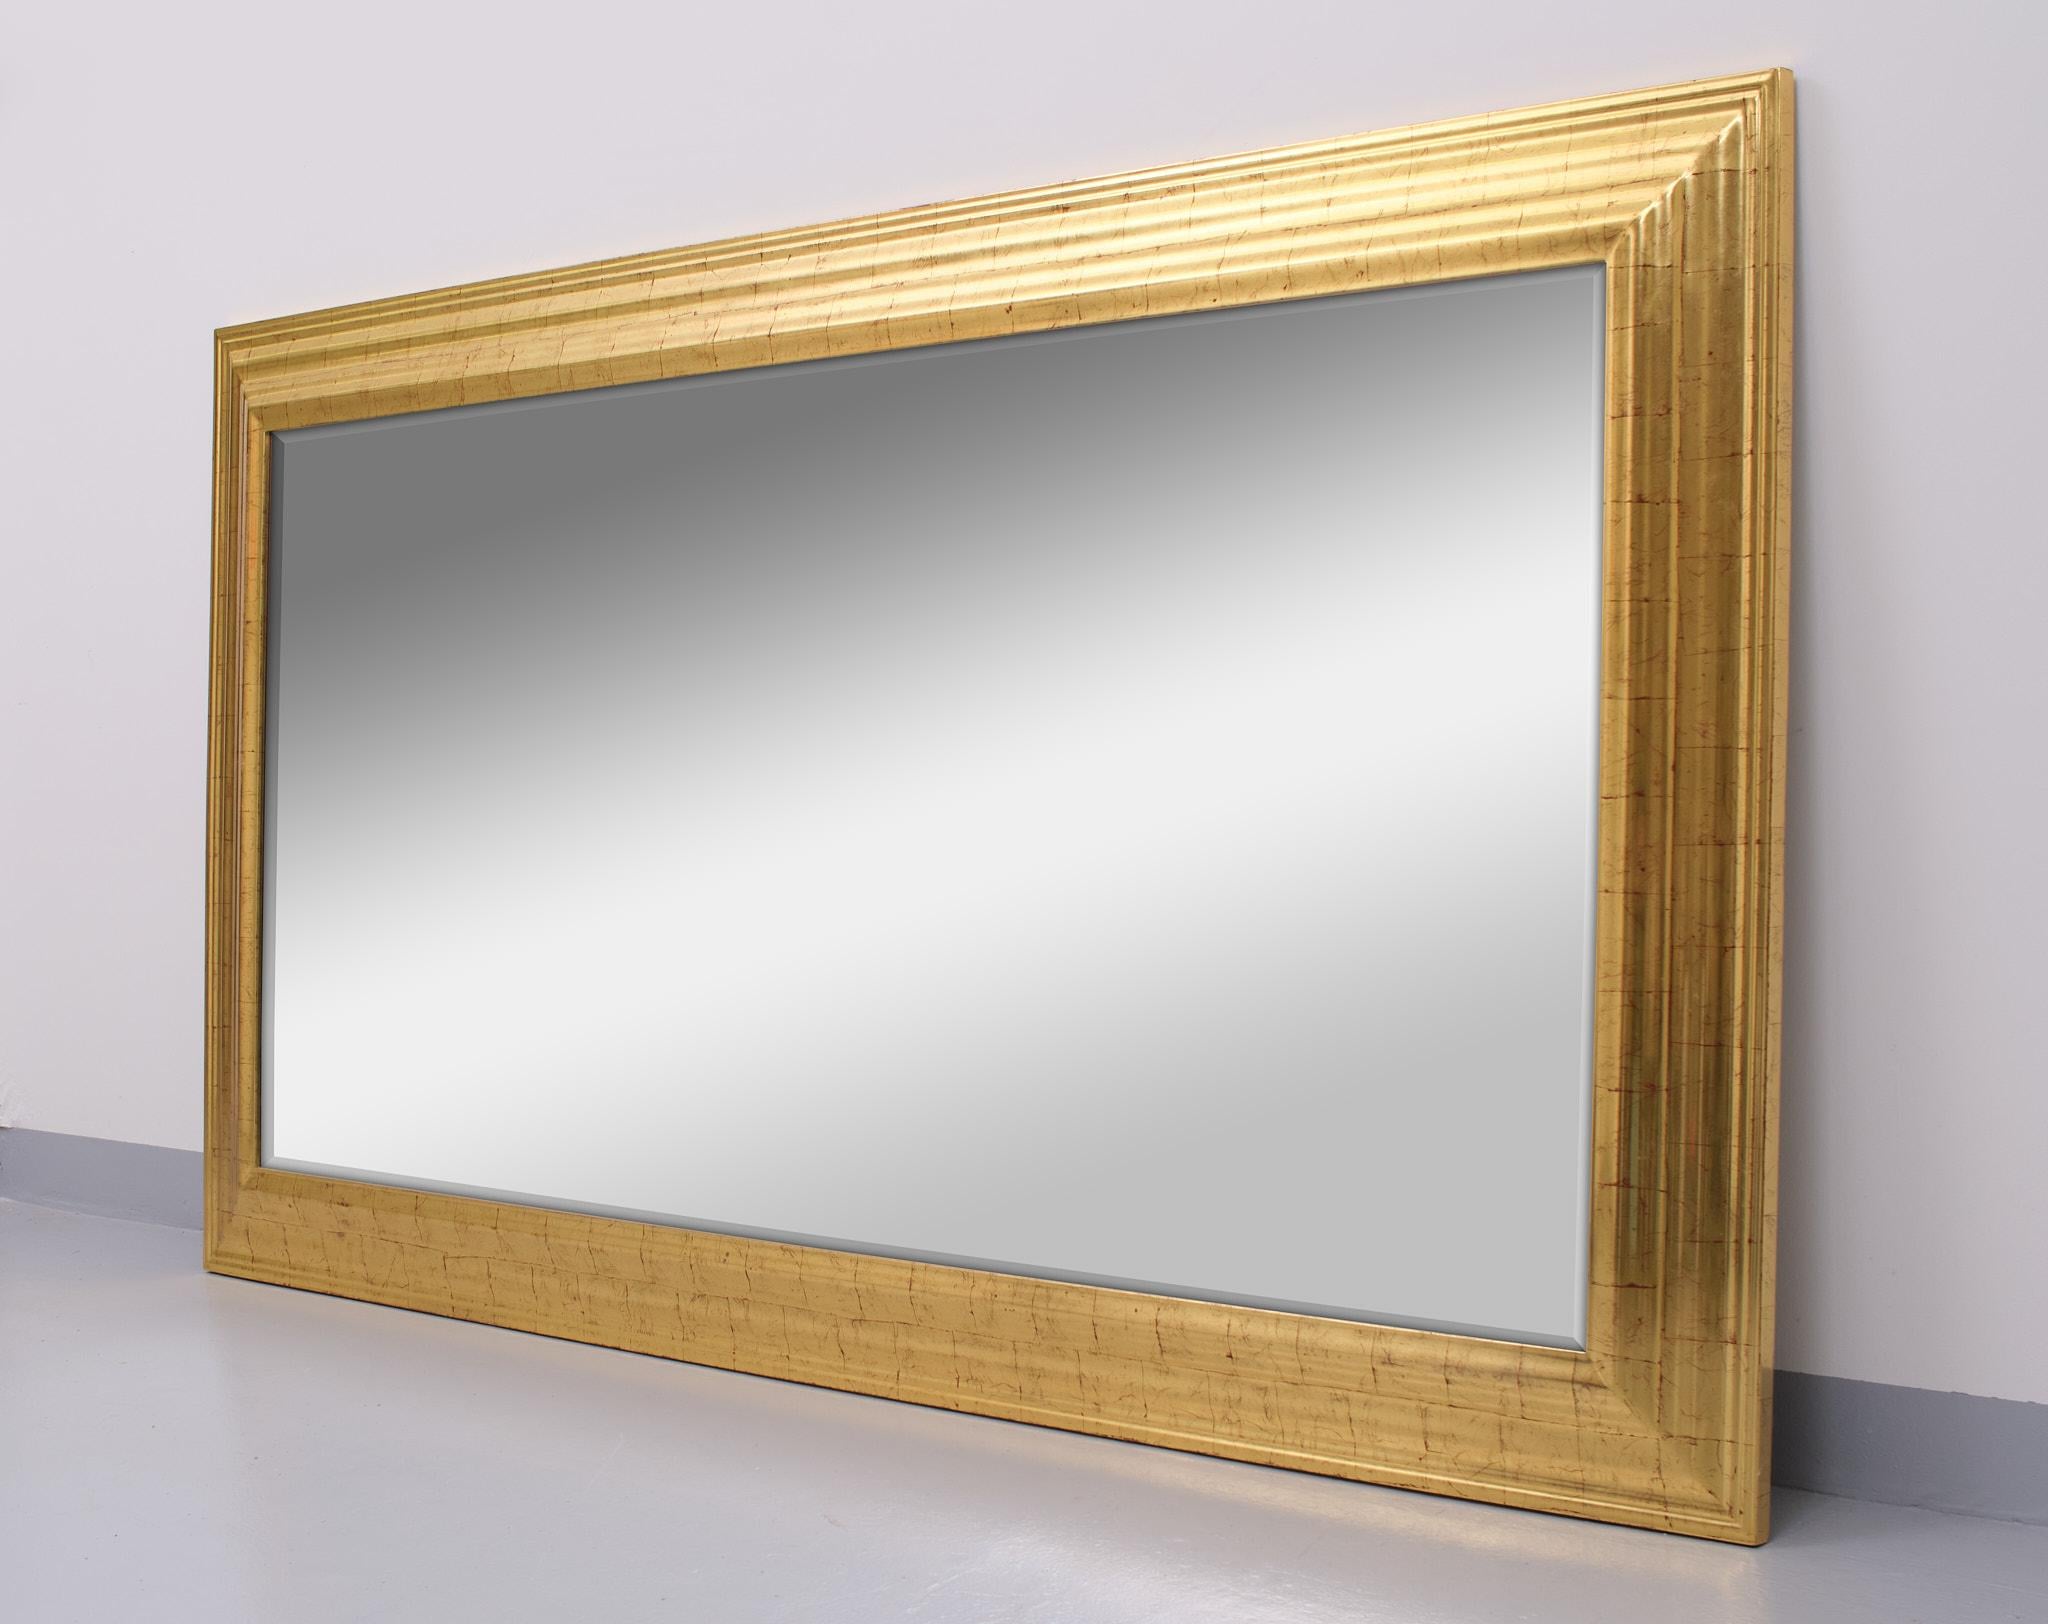 Grand miroir mural unique. Peut être utilisé à la verticale ou à l'horizontale.
Plaqué or sur cadre en bois. Miroir biseauté. Signé. Bon état.